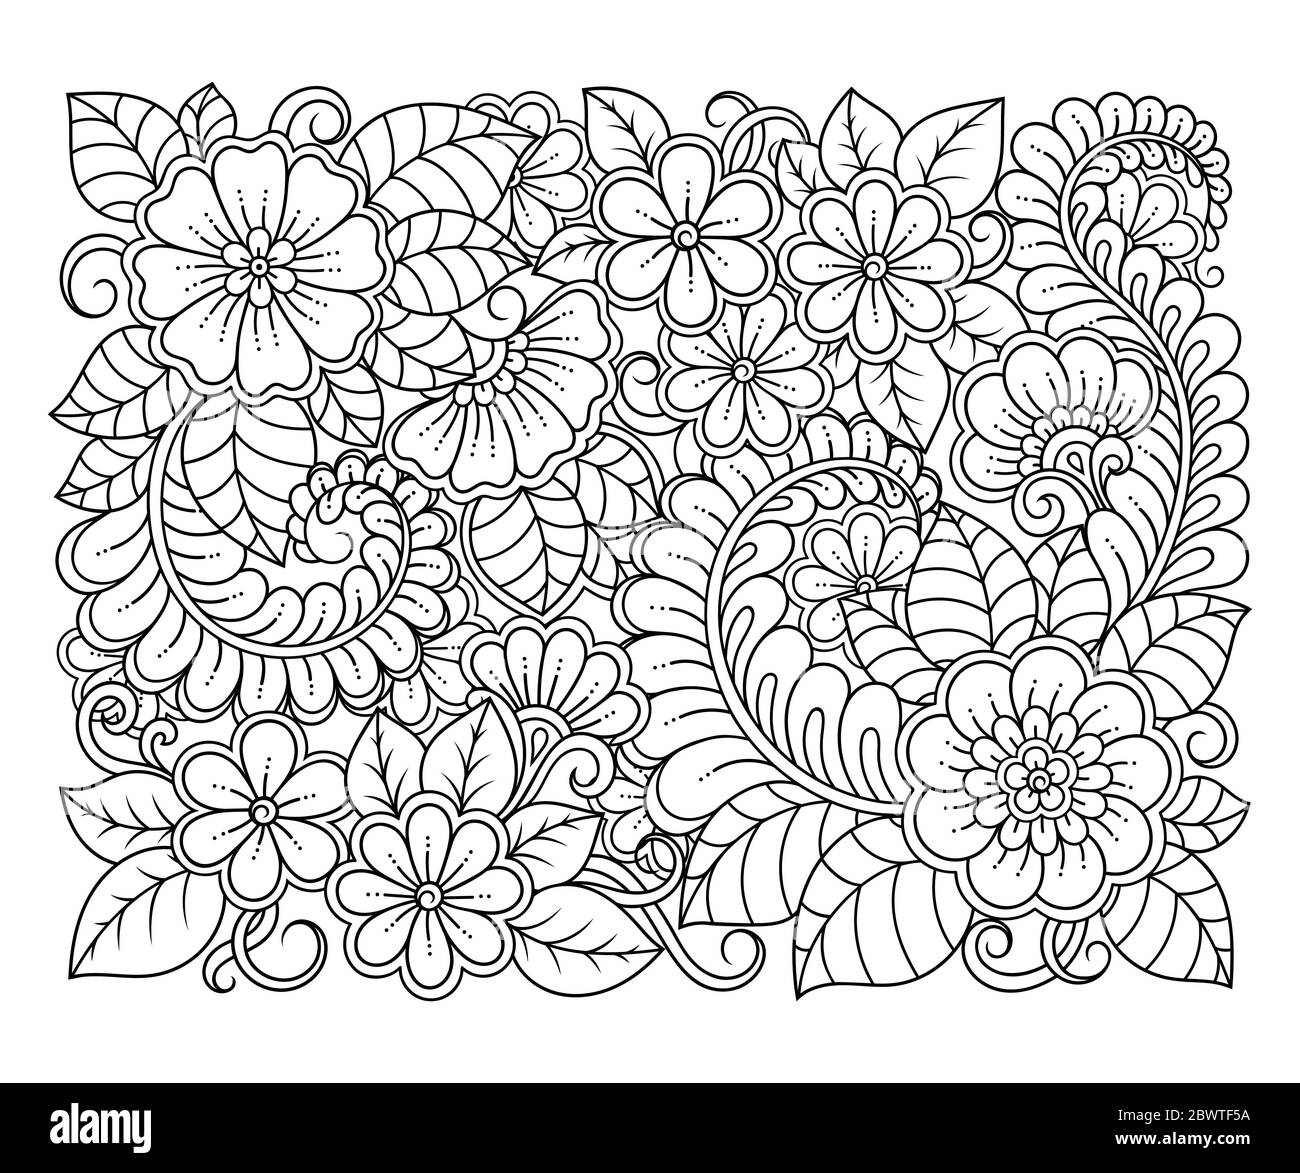 Motif floral carré en style mehndi pour la page de livre de coloriage. Antistress pour adultes et enfants. Décoration Doodle en noir et blanc. Main Banque D'Images